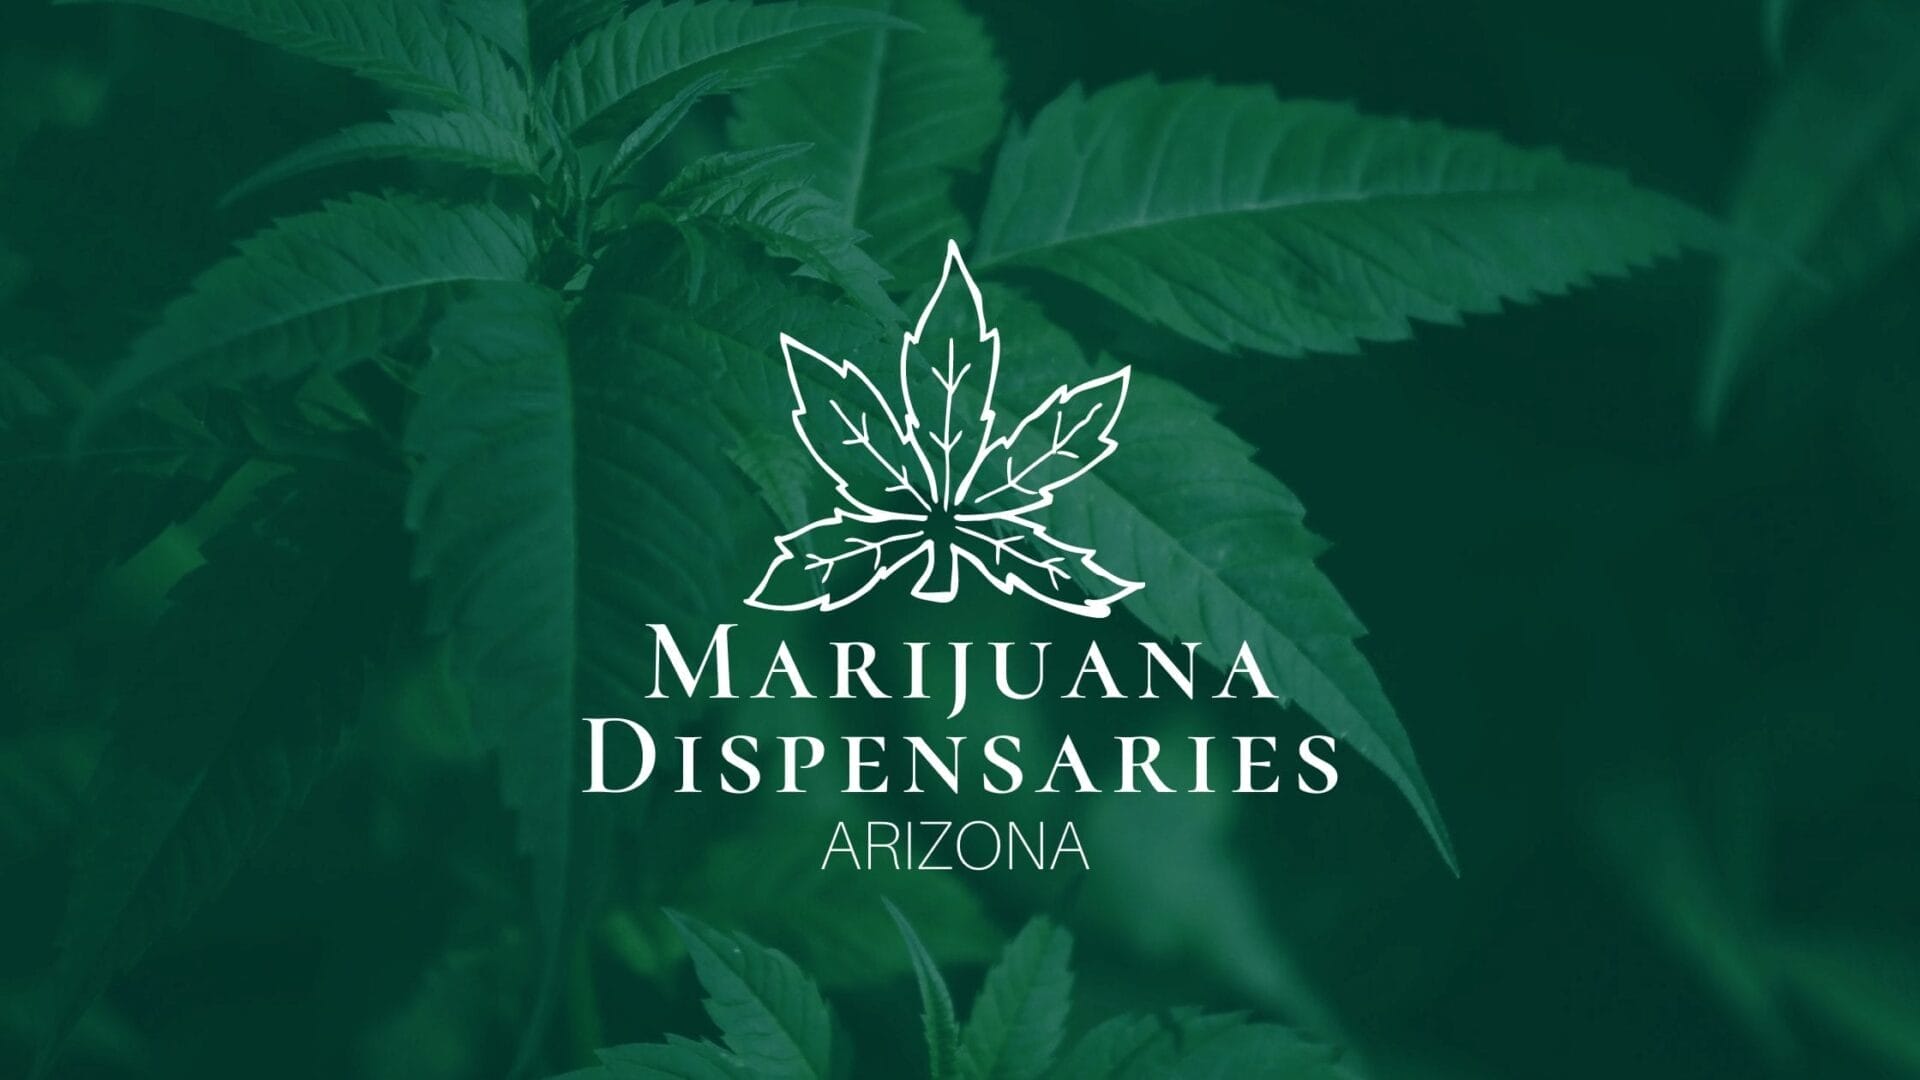 Daily Deals - Arizona Cannabis Society